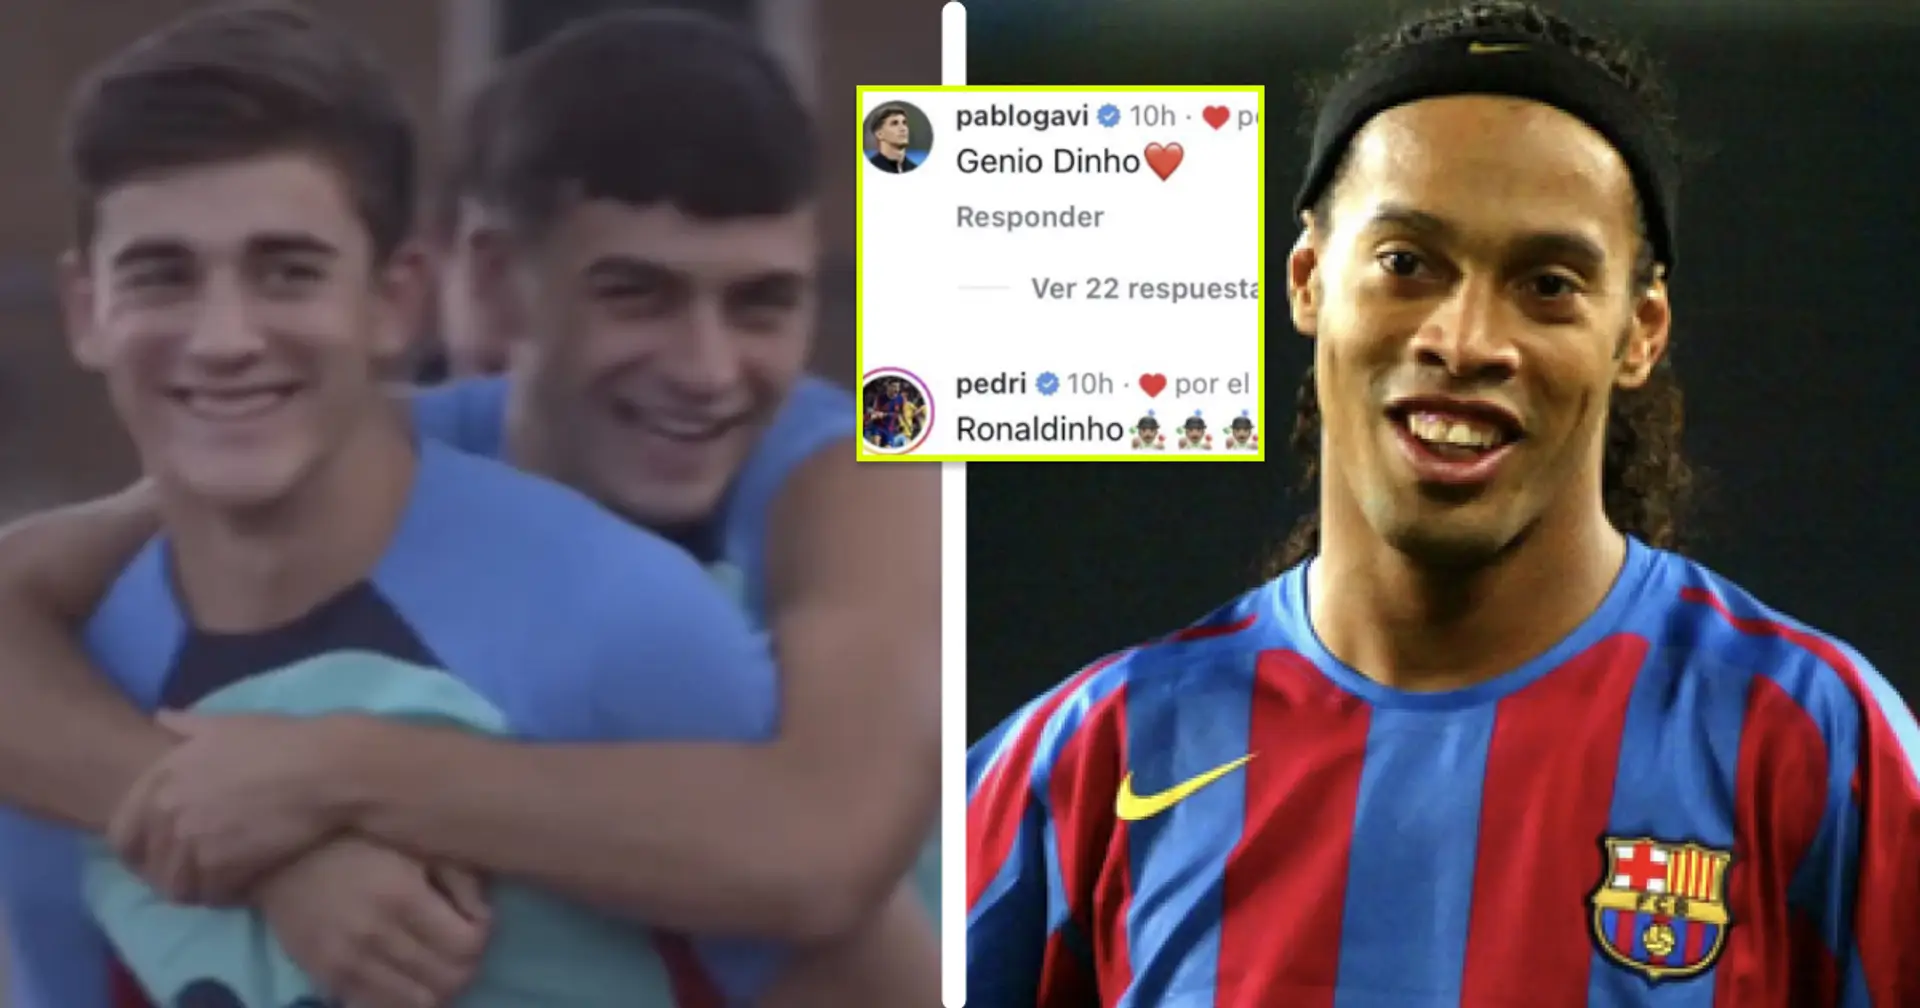 Pedri et Gavi appellent un joueur surprise du Barça, Ronaldinho, après la victoire contre Valence - ce n'est ni Raphinha ni Yamal